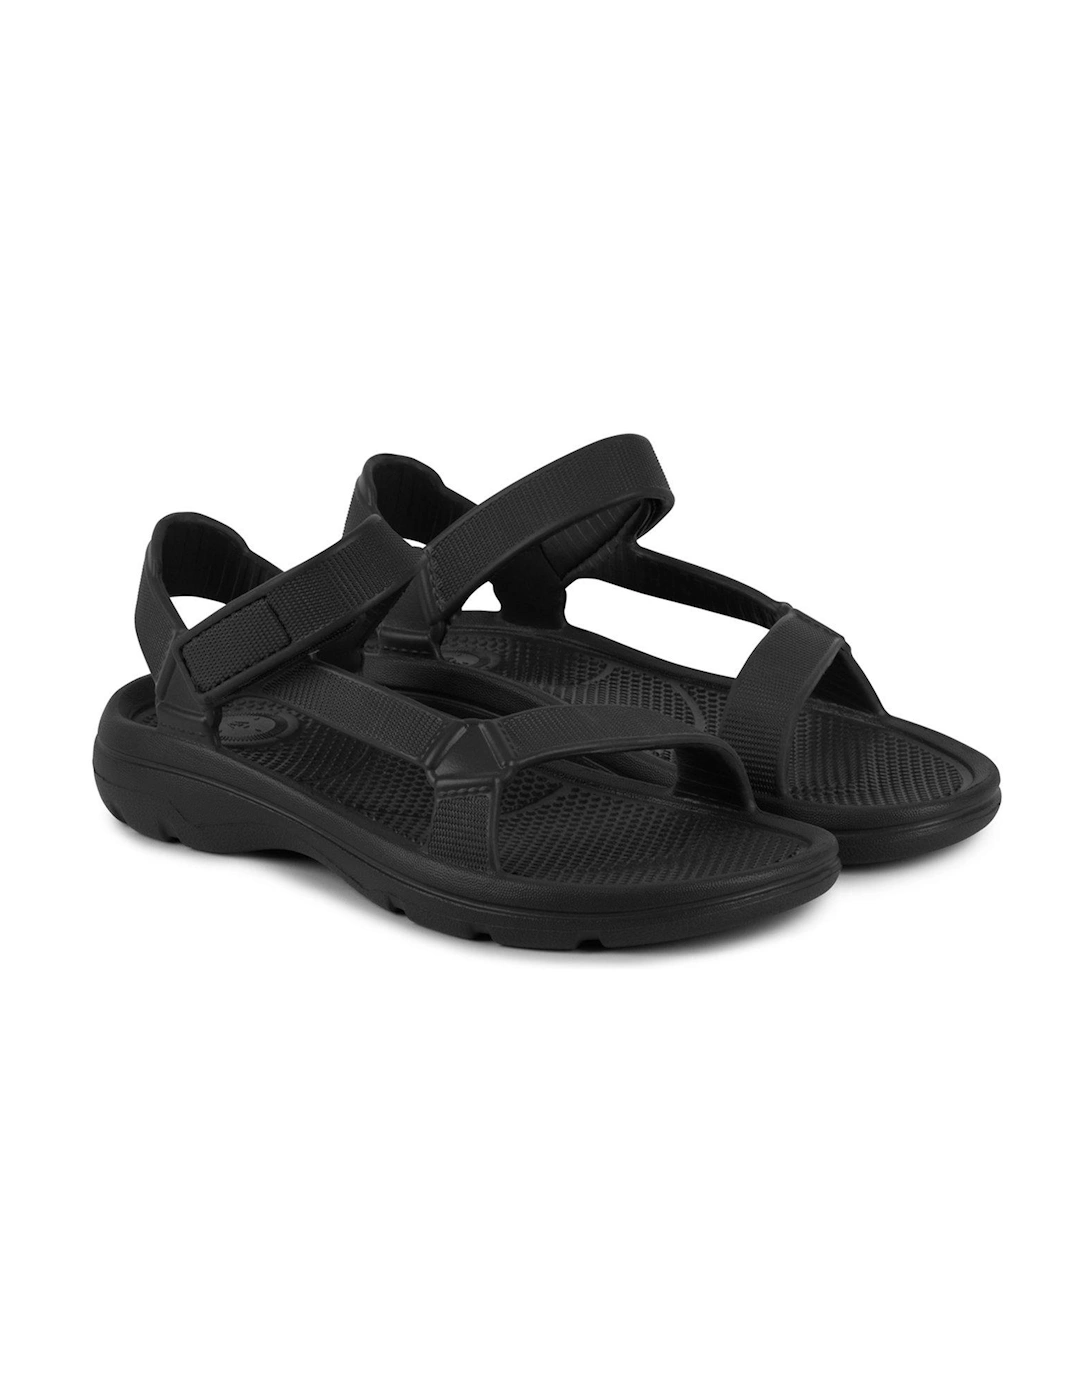 Solbounce Riley Adjustable Sport Sandal - Black, 2 of 1